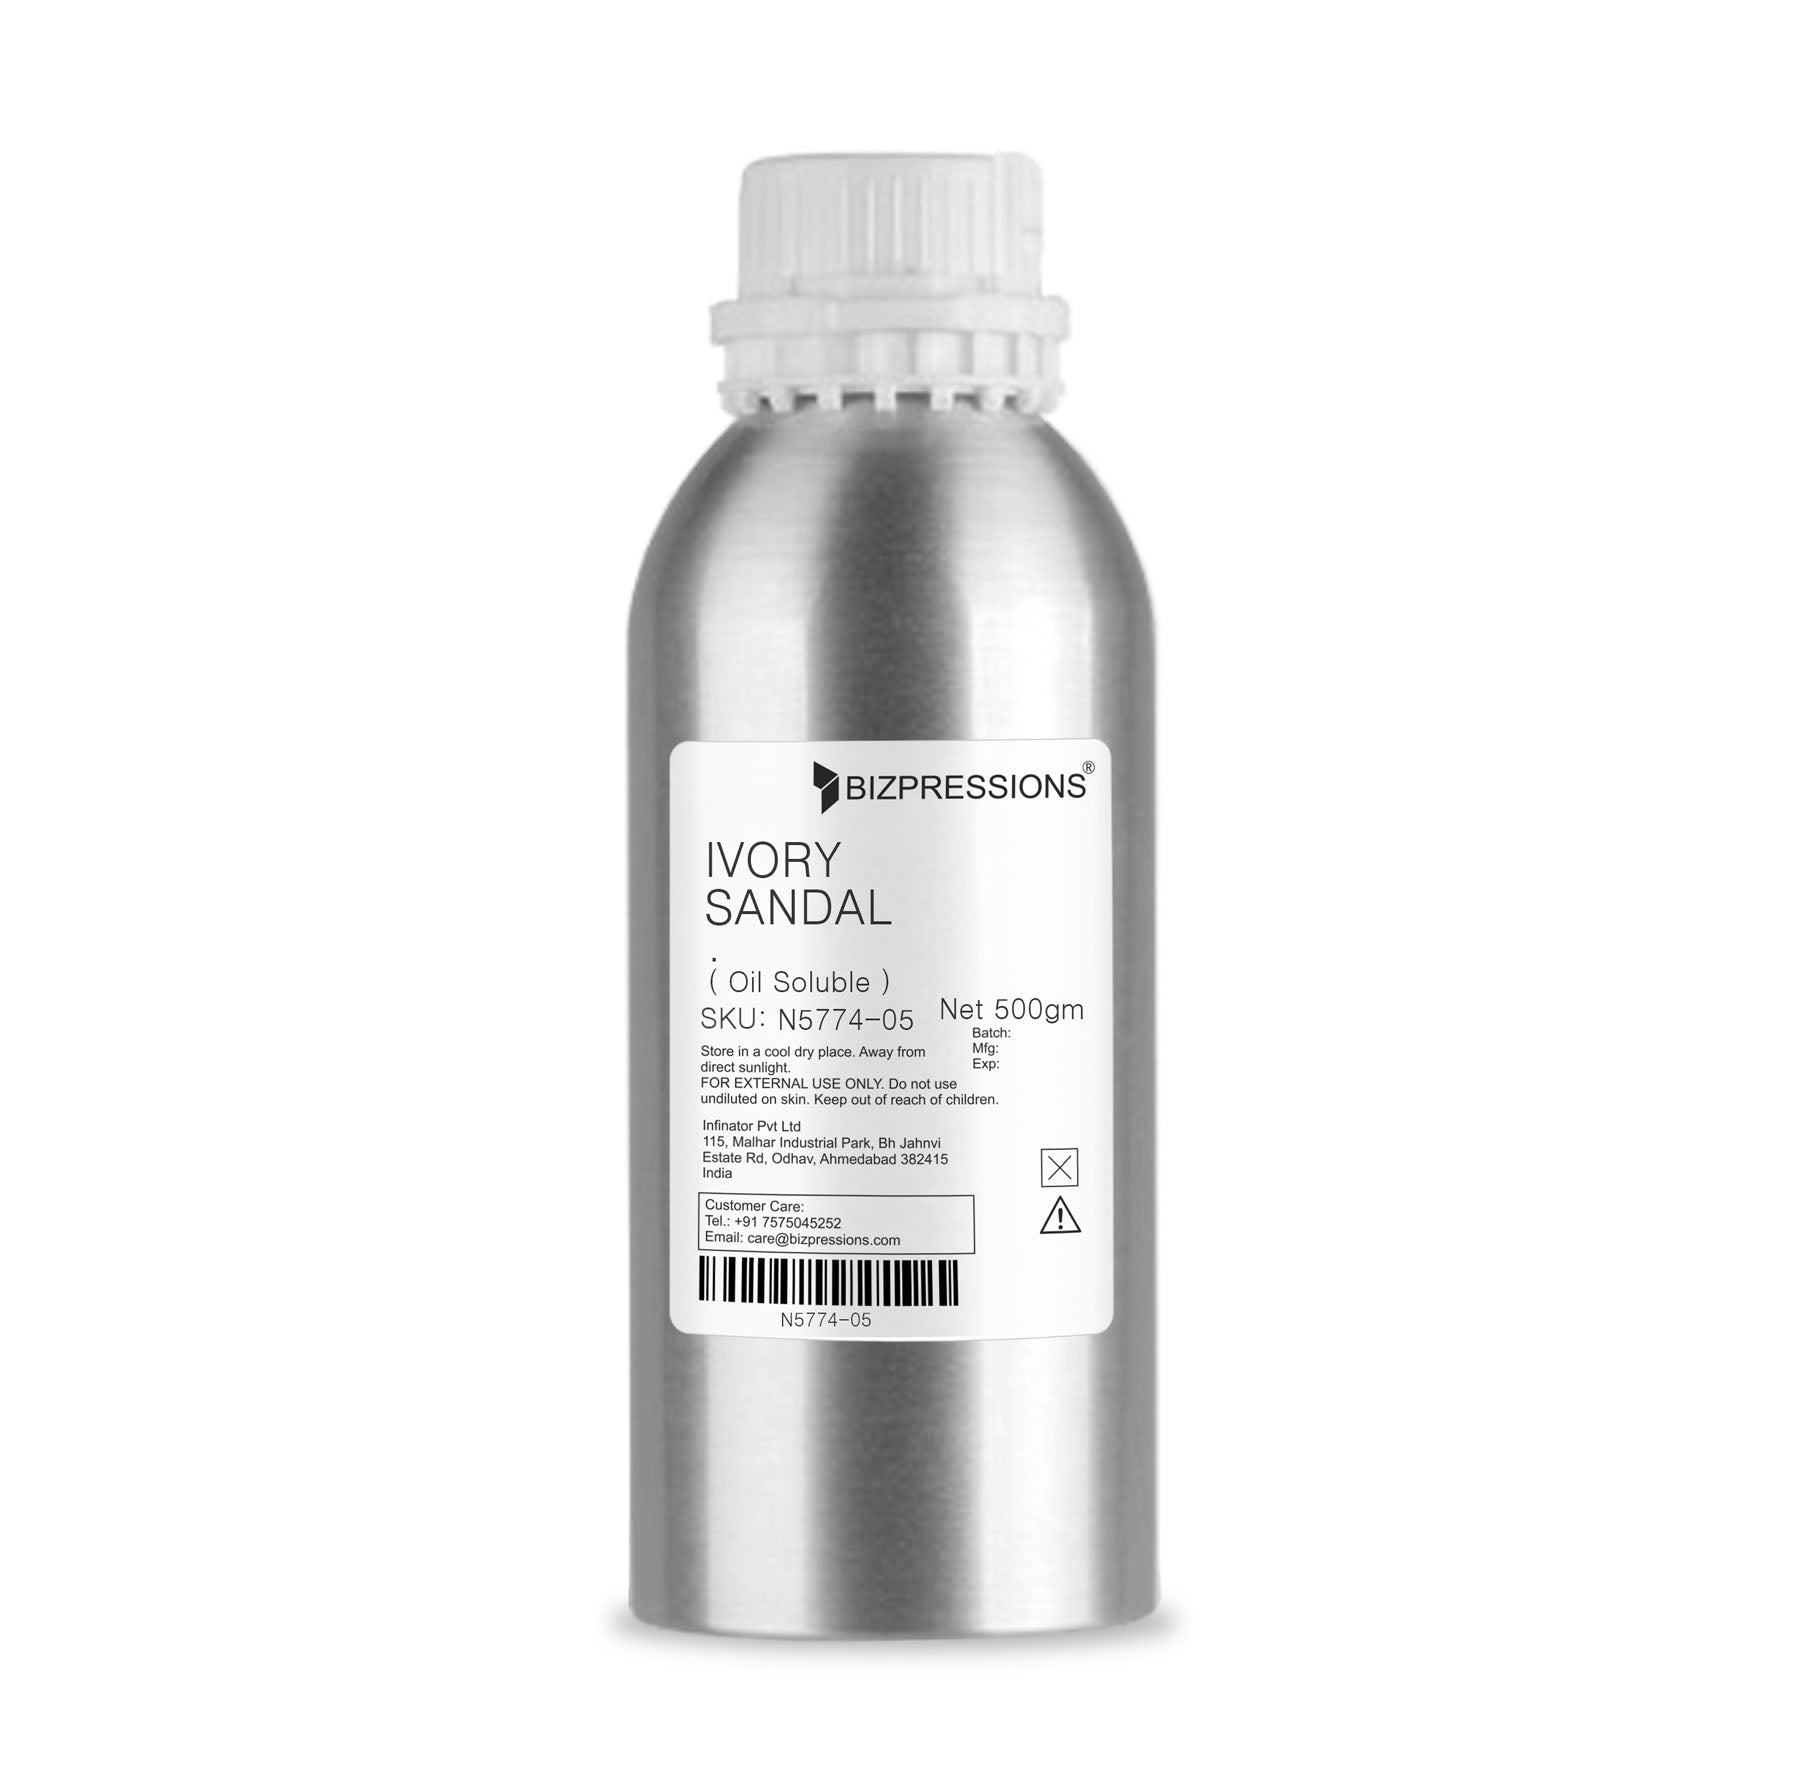 IVORY SANDAL - Fragrance ( Oil Soluble ) - 500 gm